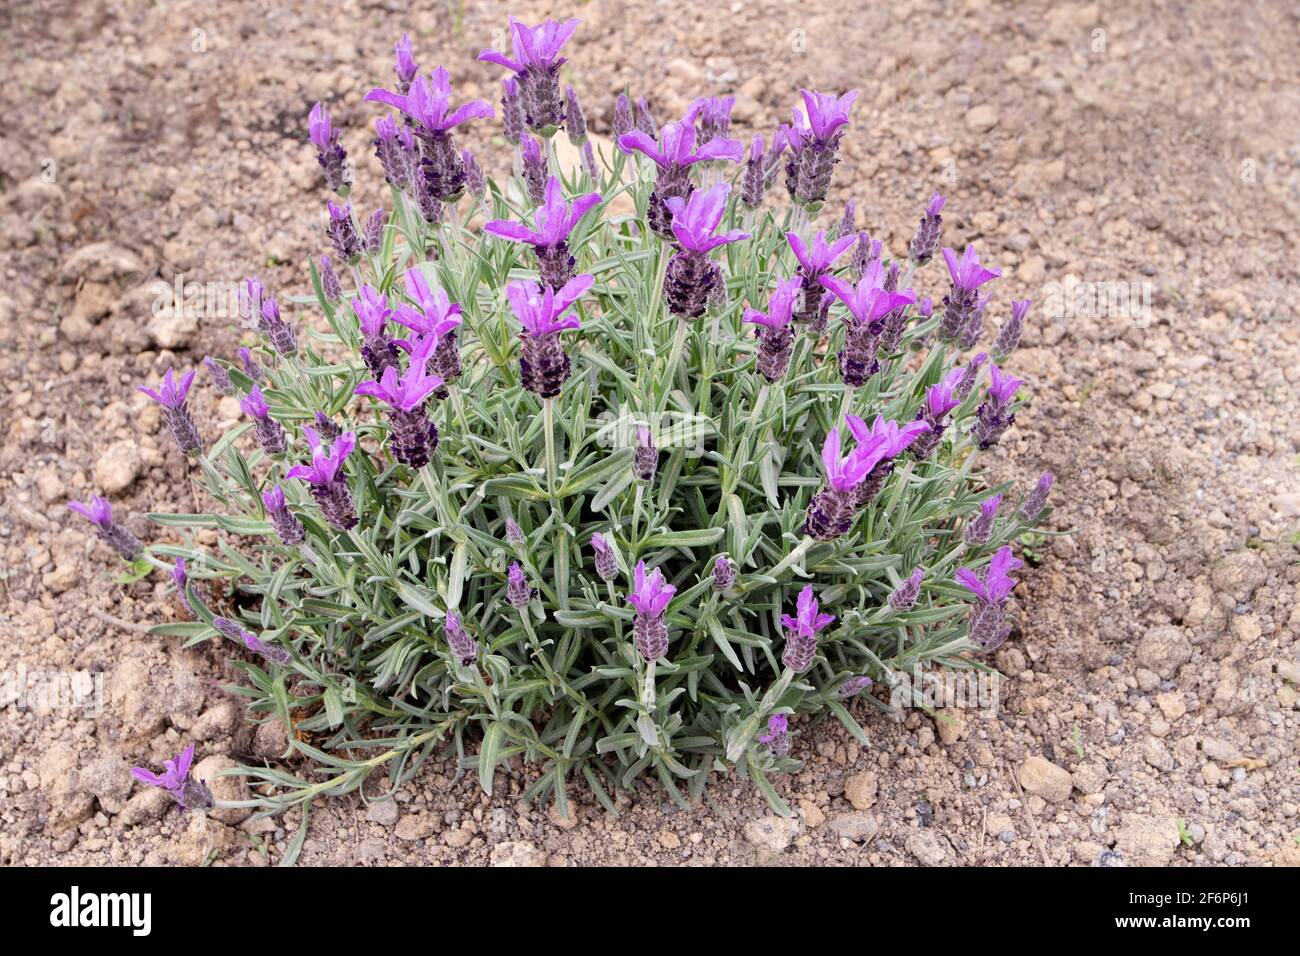 Spanischer Lavendel oder lavandula stoechas Busch. Französisch oder gekrönt Lavendel blühende Pflanze. Frühling lila Blütenspitzen und silbrige Blätter. Stockfoto